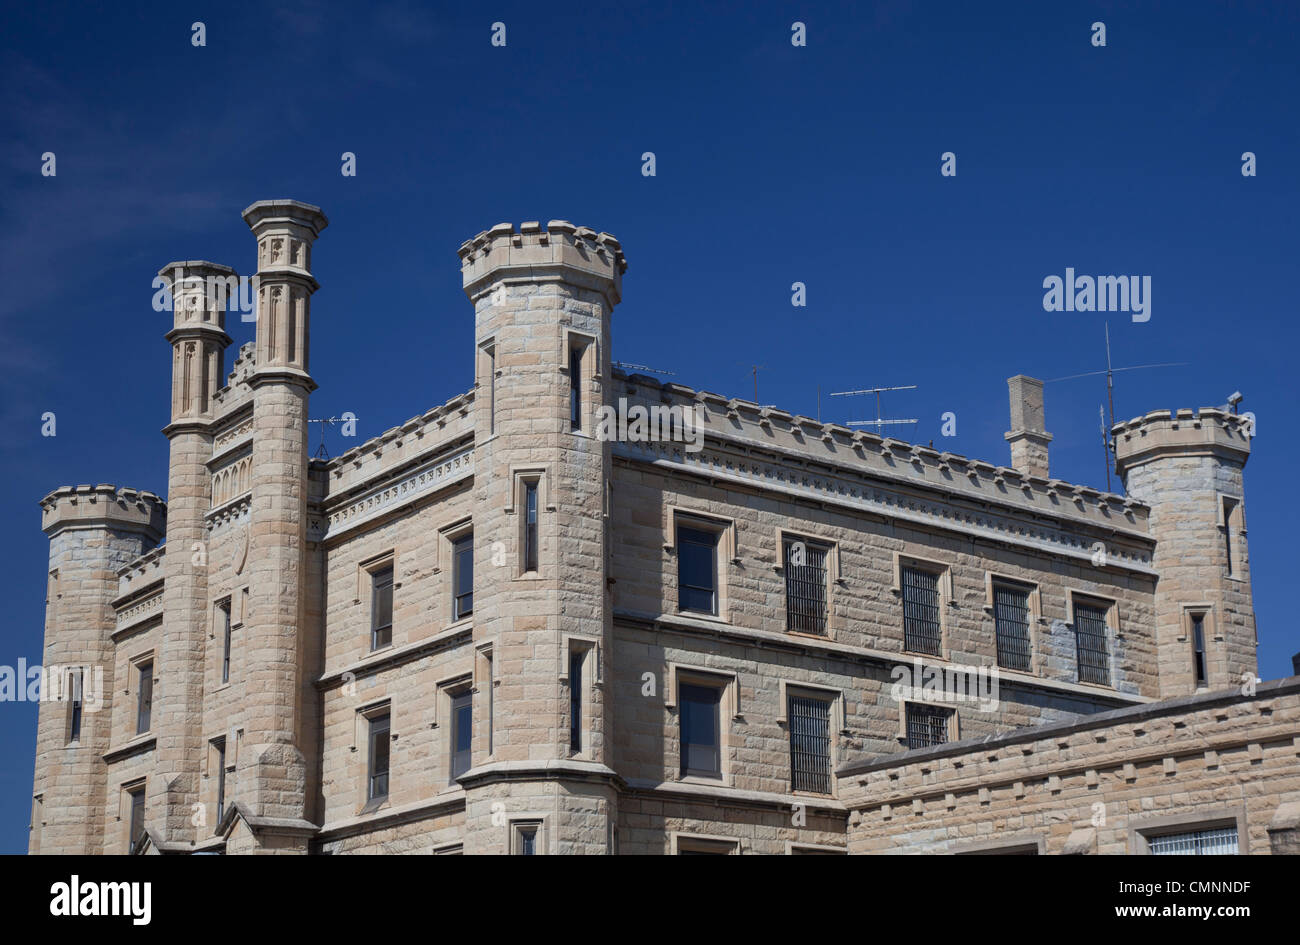 Joliet, Illinois - Le Centre correctionnel de Joliet, une prison qui a ouvert en 1858 et fermé en 2002. Banque D'Images